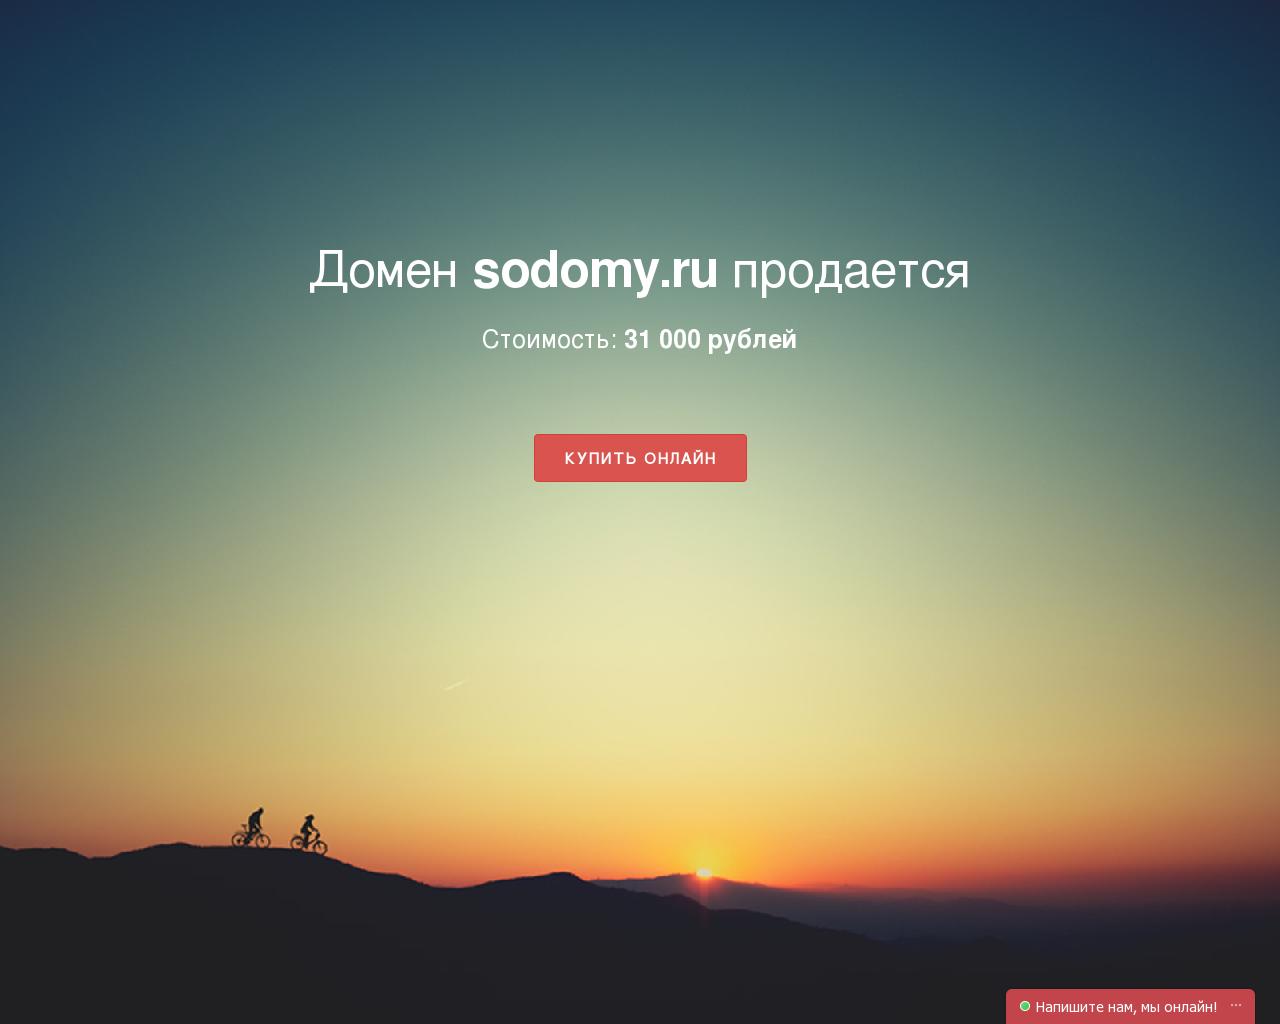 Изображение сайта sodomy.ru в разрешении 1280x1024